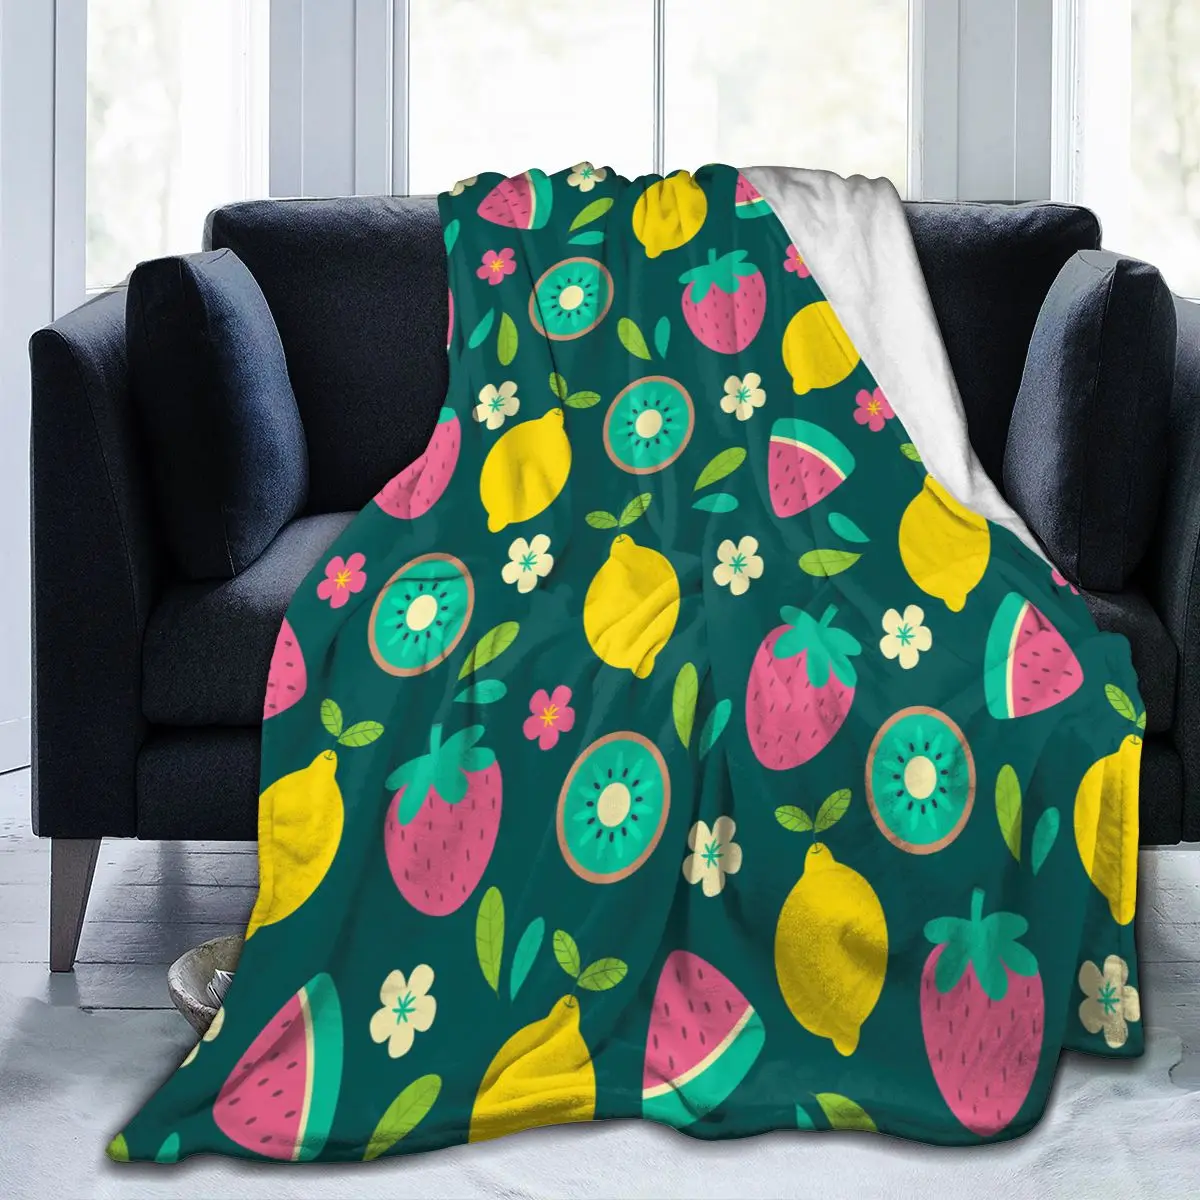 

Мягкое теплое фланелевое одеяло с тропическими фруктами для путешествий, переносное зимнее тонкое покрывало для кровати, дивана, одеяло